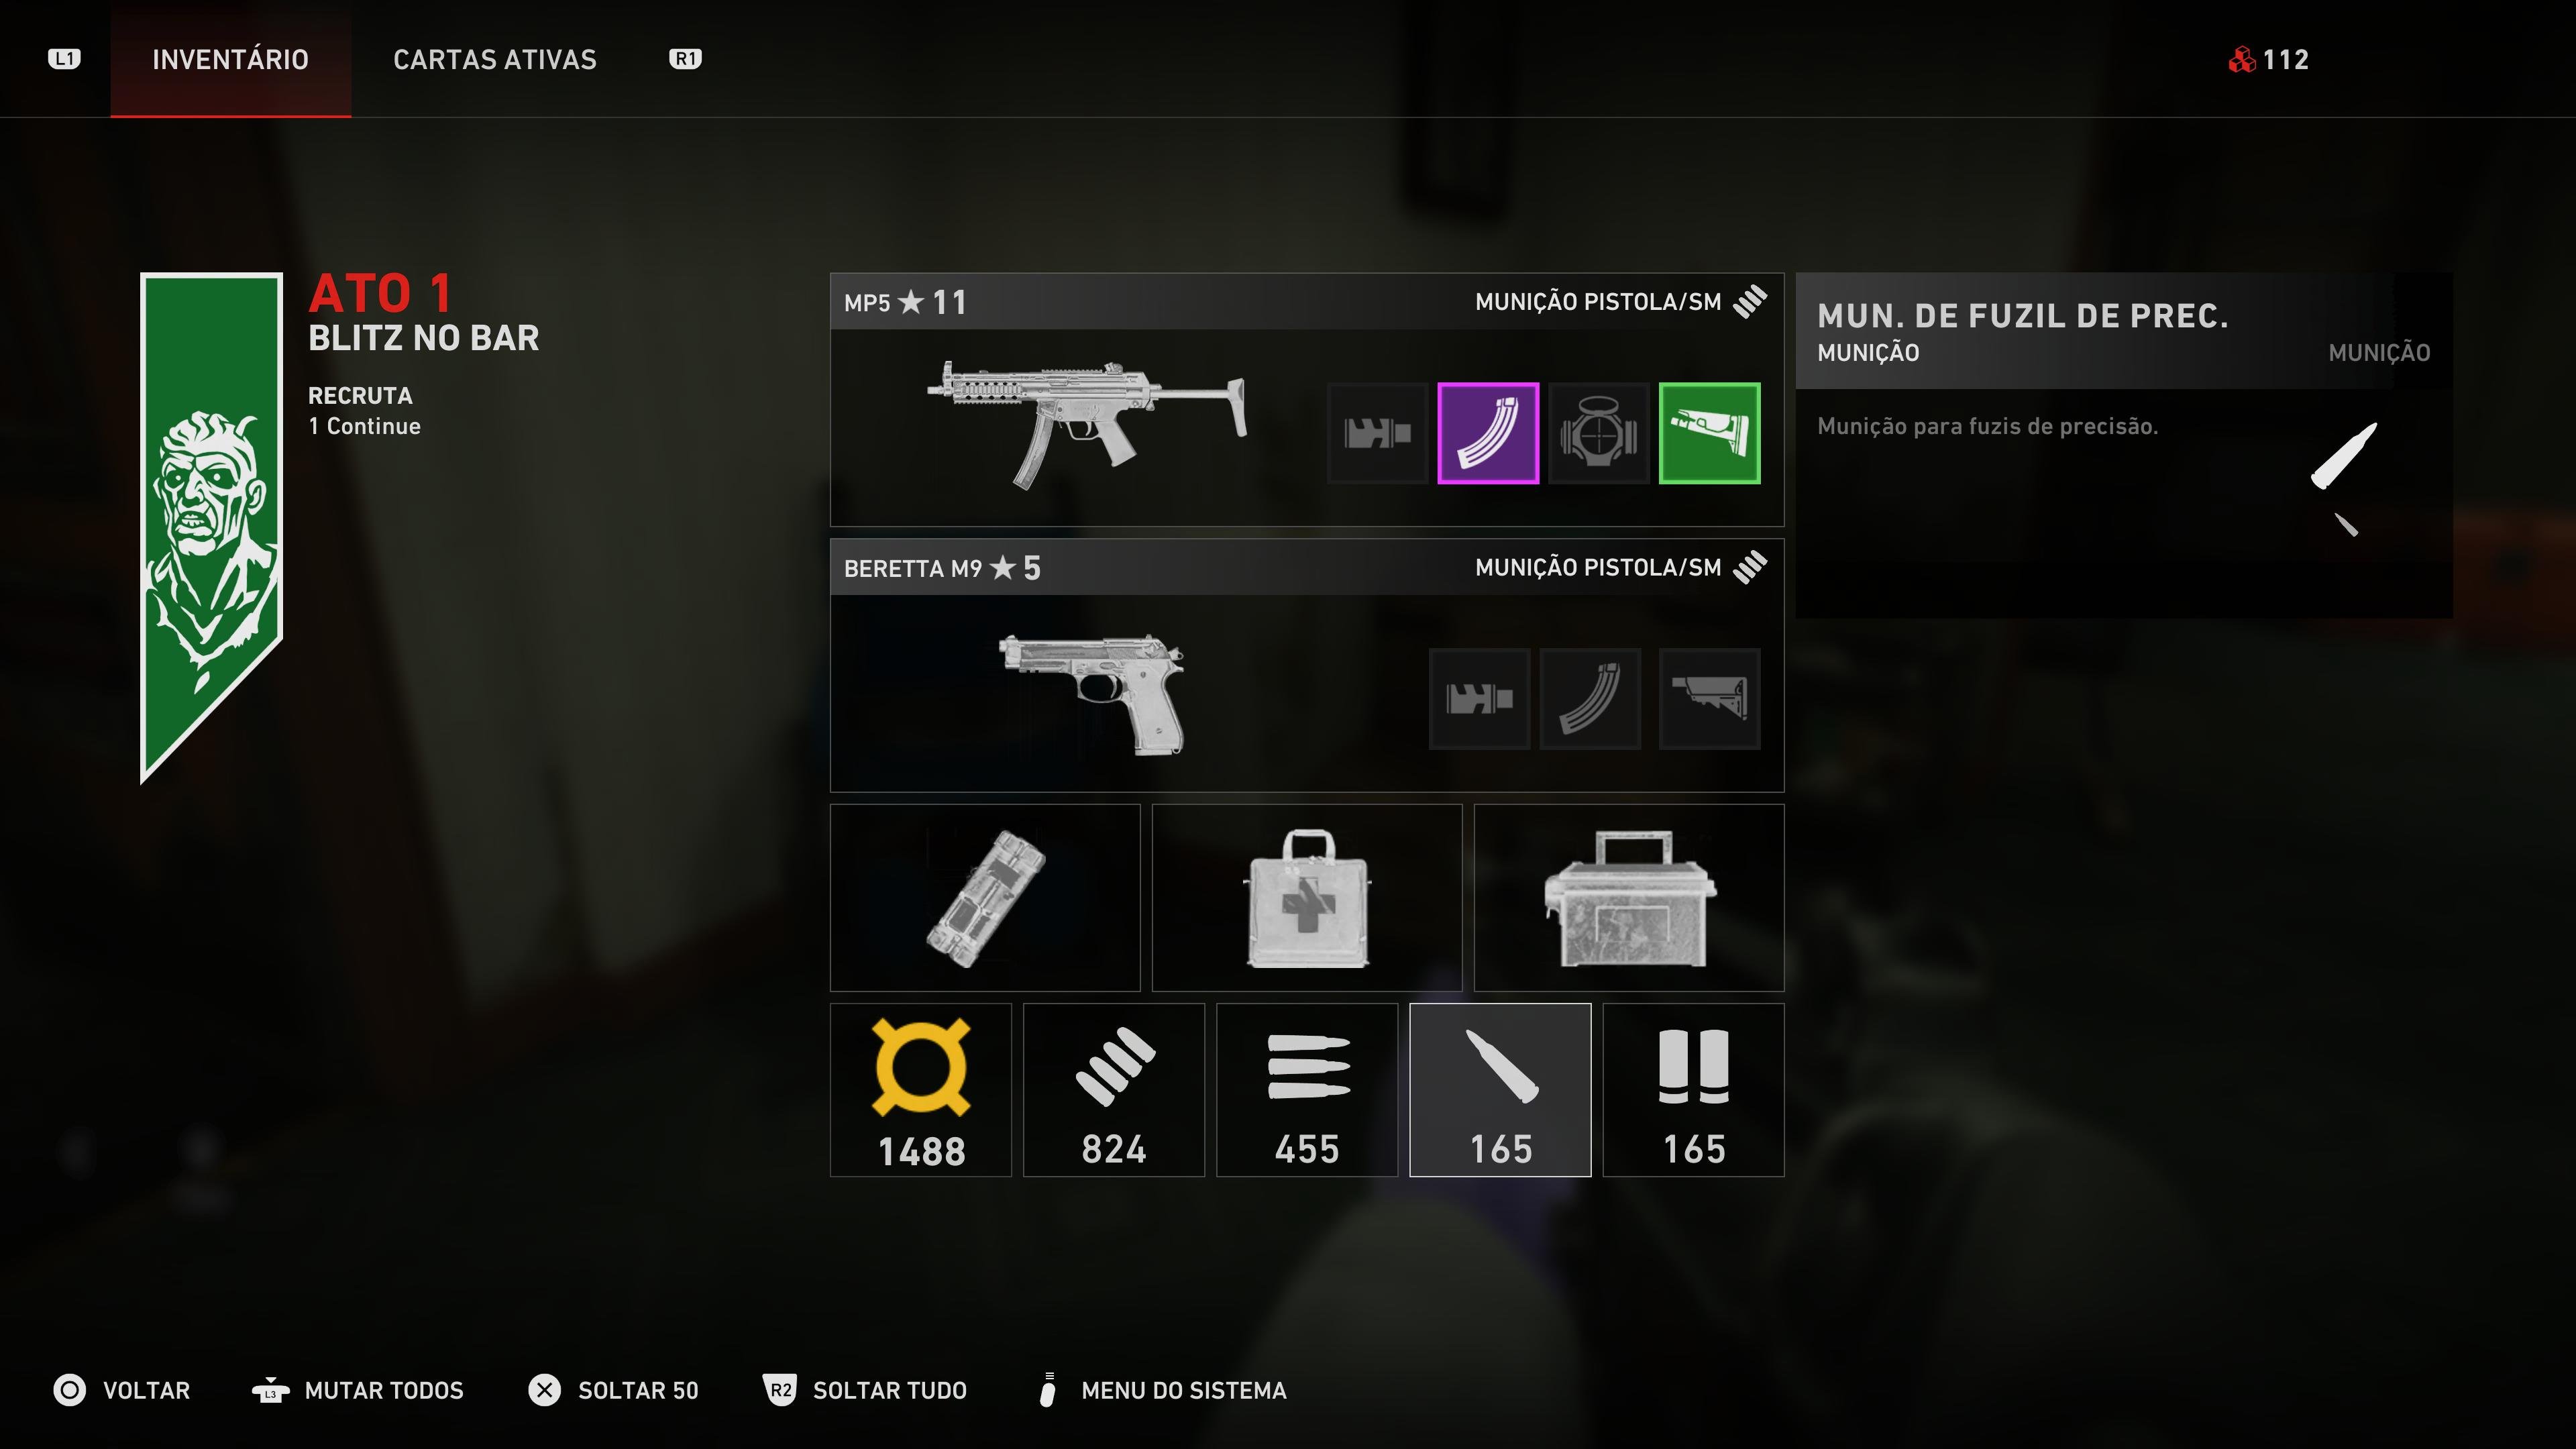 É possível carregar vários tipos de munição ao mesmo tempo, eventualmente sendo necessário compartilhar com outros jogadores.